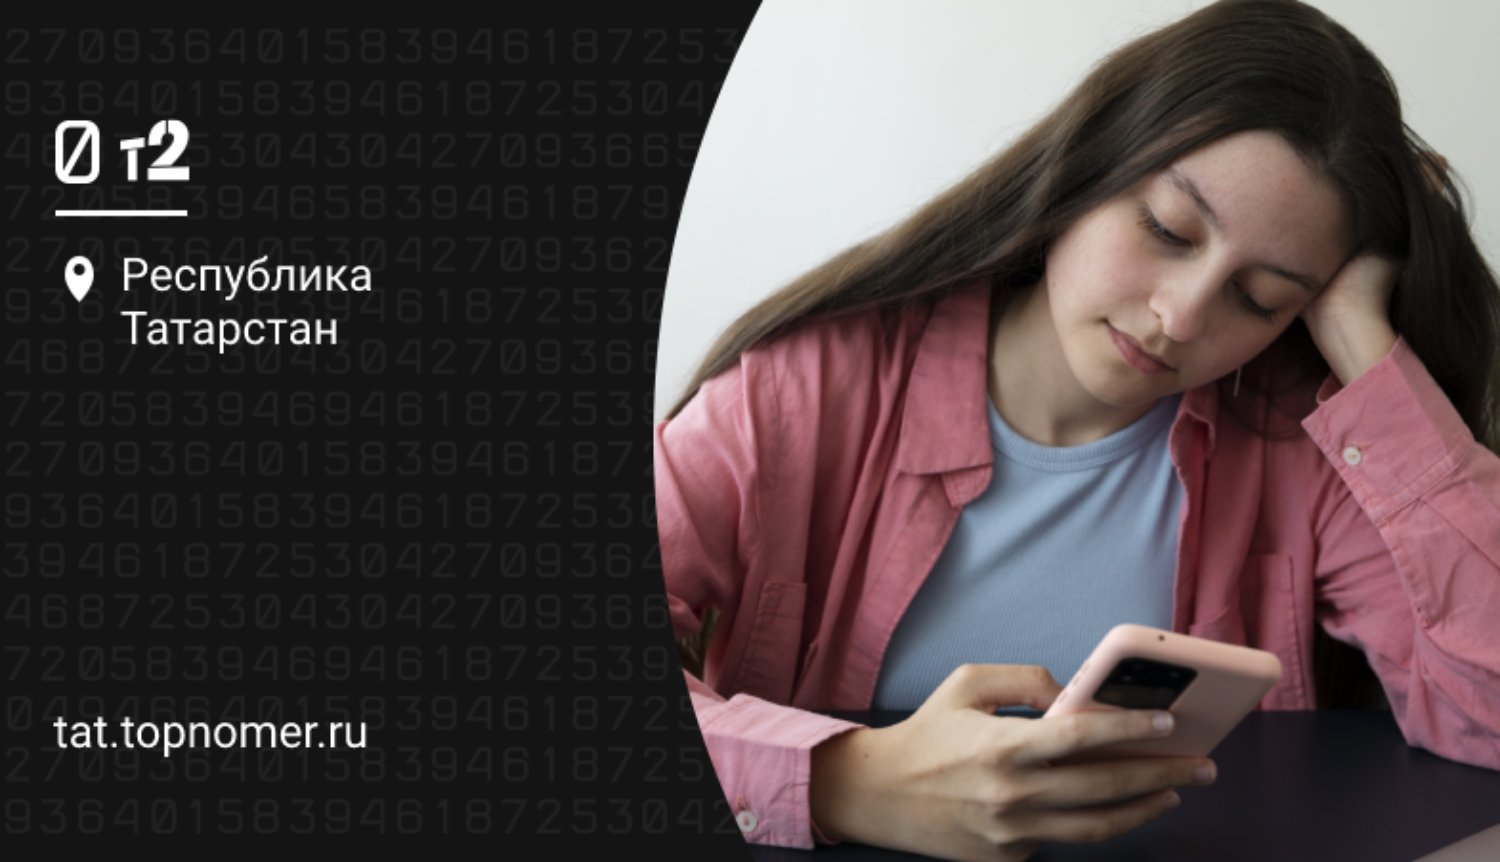 Абоненты Tele2 в Татарстане выбирают более надежные телефоны